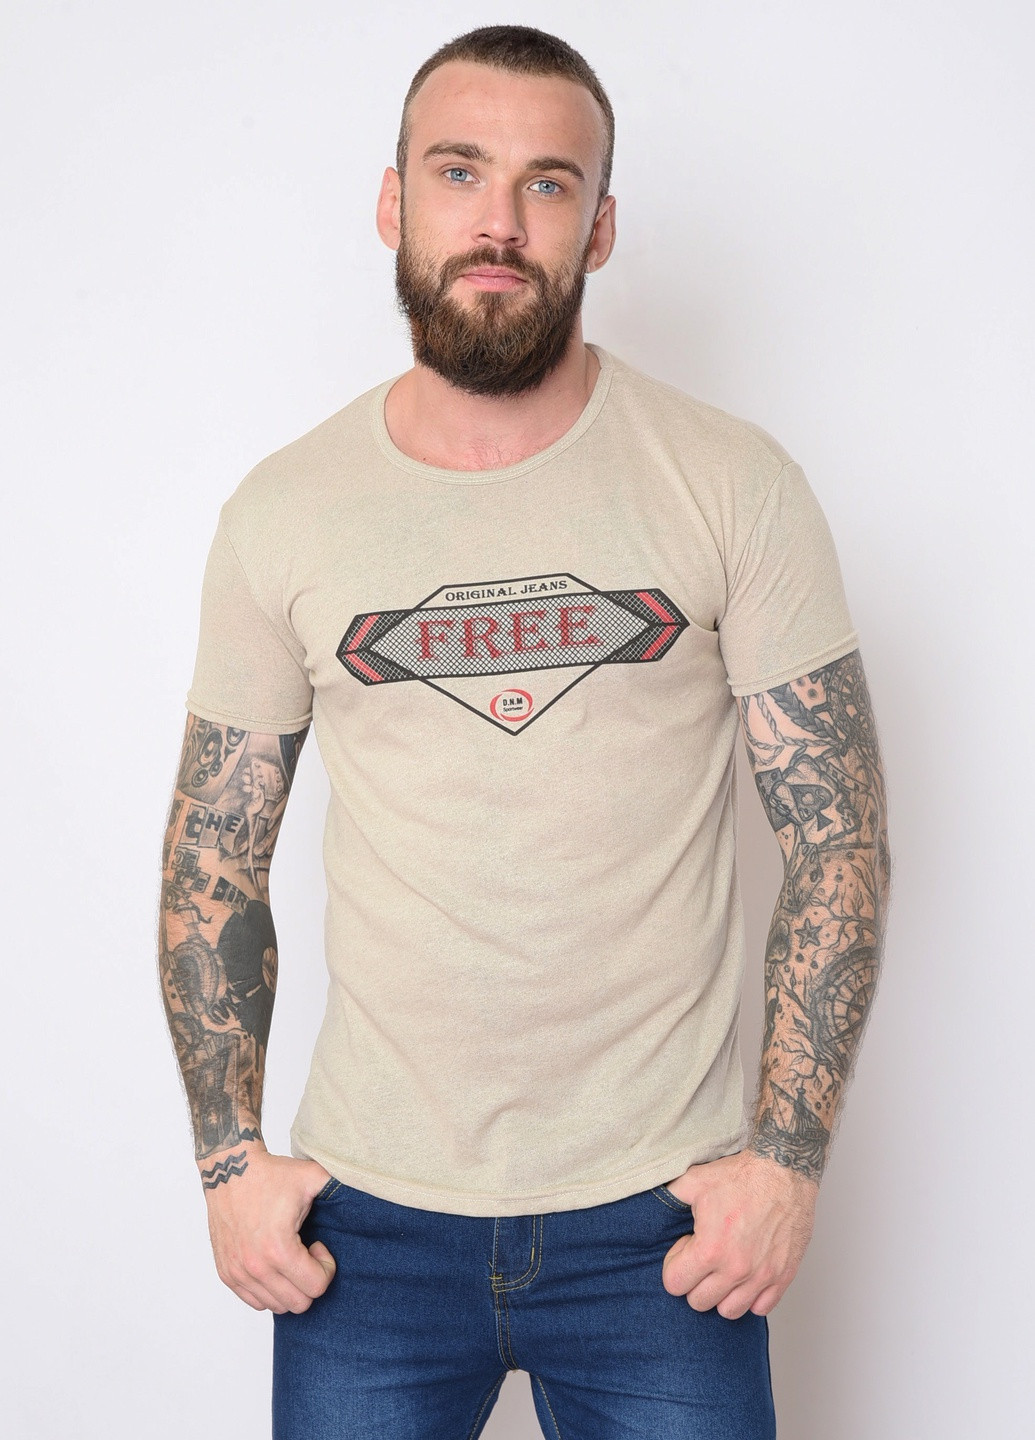 Бежевая футболка мужская бежевого цвета с рисунком Let's Shop